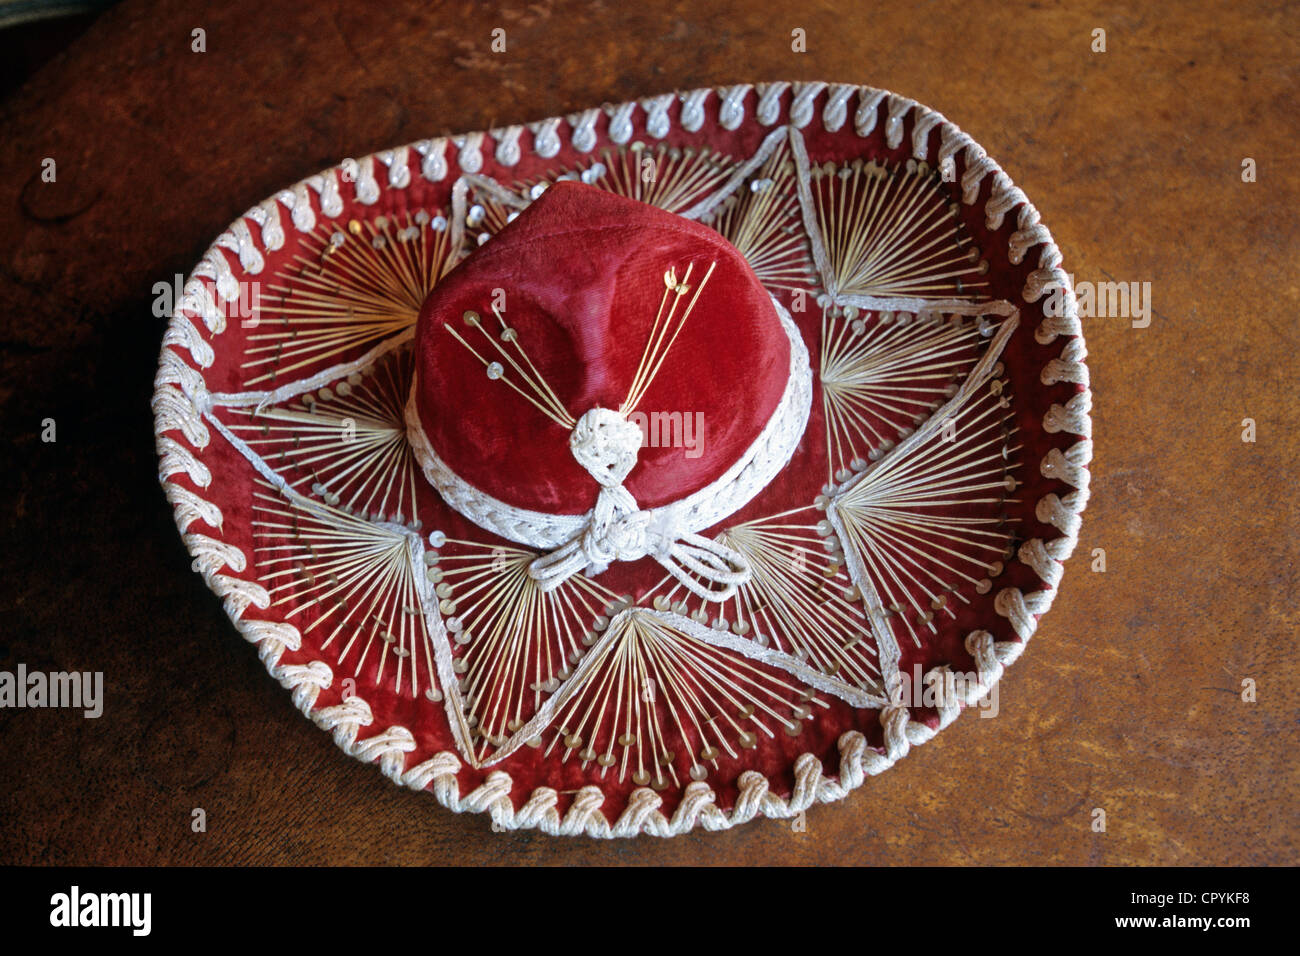 Mexiko, Chihuahua, Mariachi sombrero Stockfoto